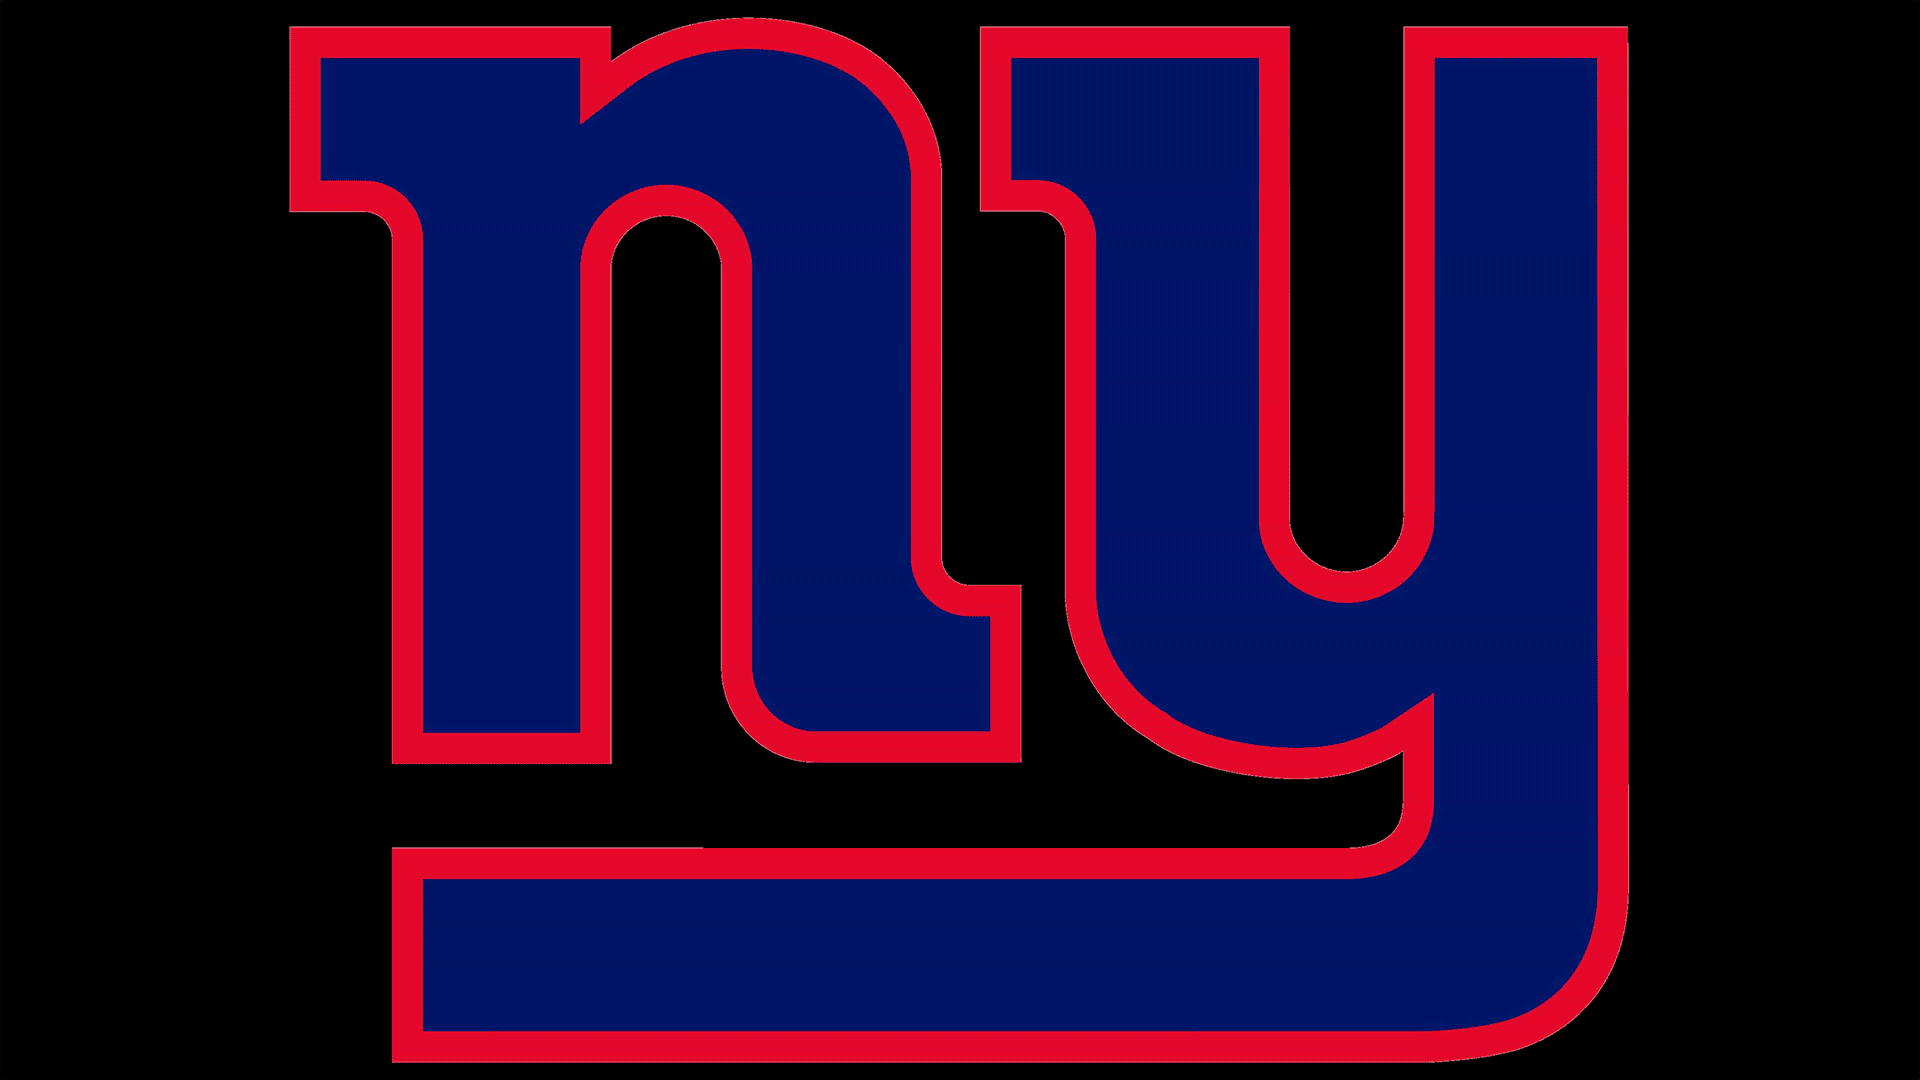 Seit dem Jahr 2000 verwenden die New York Giants ein Textemblem, das nur zw...